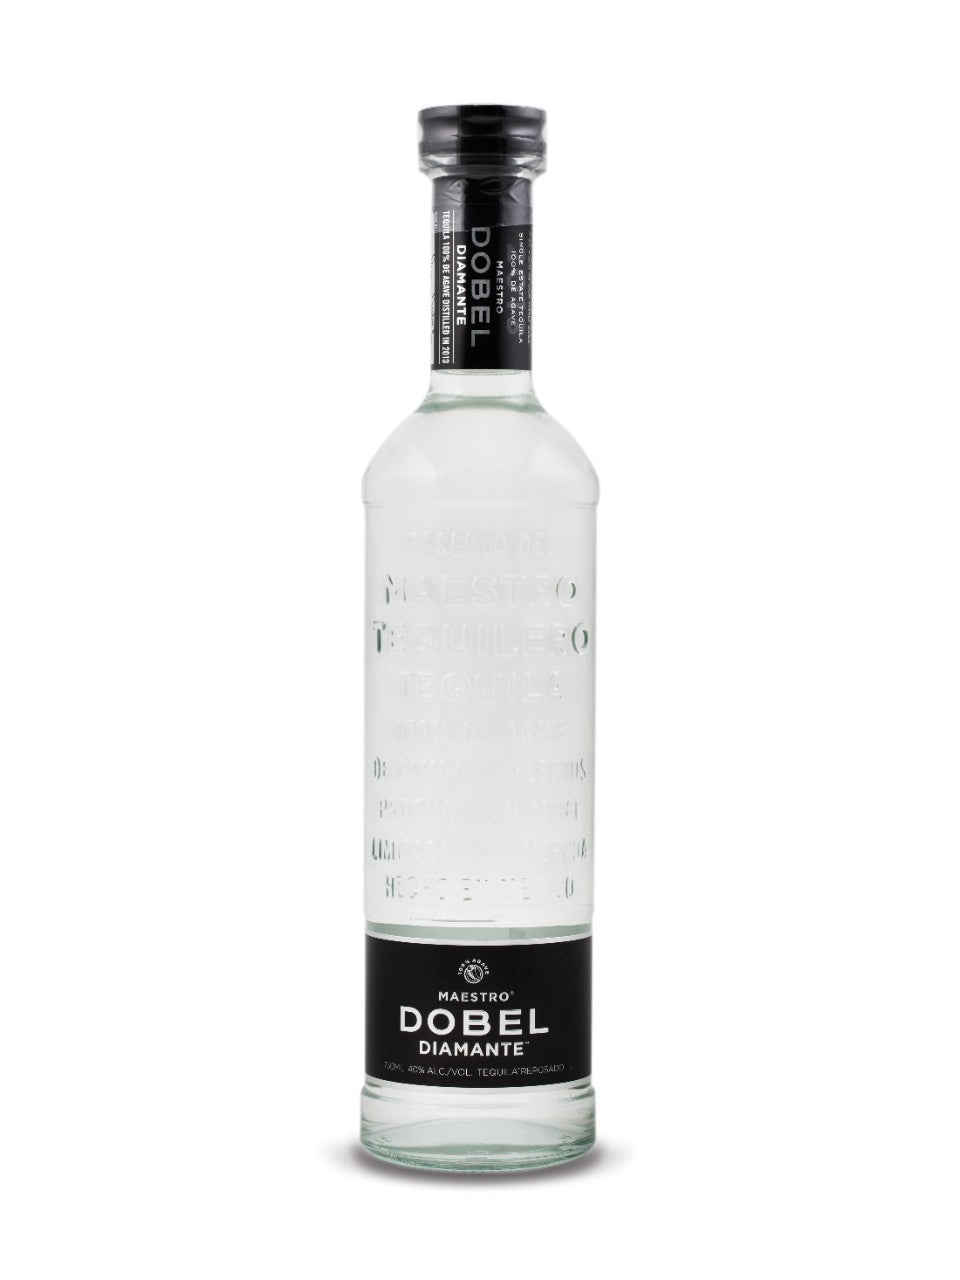 Maestro Dobel Tequila 750 mL bottle